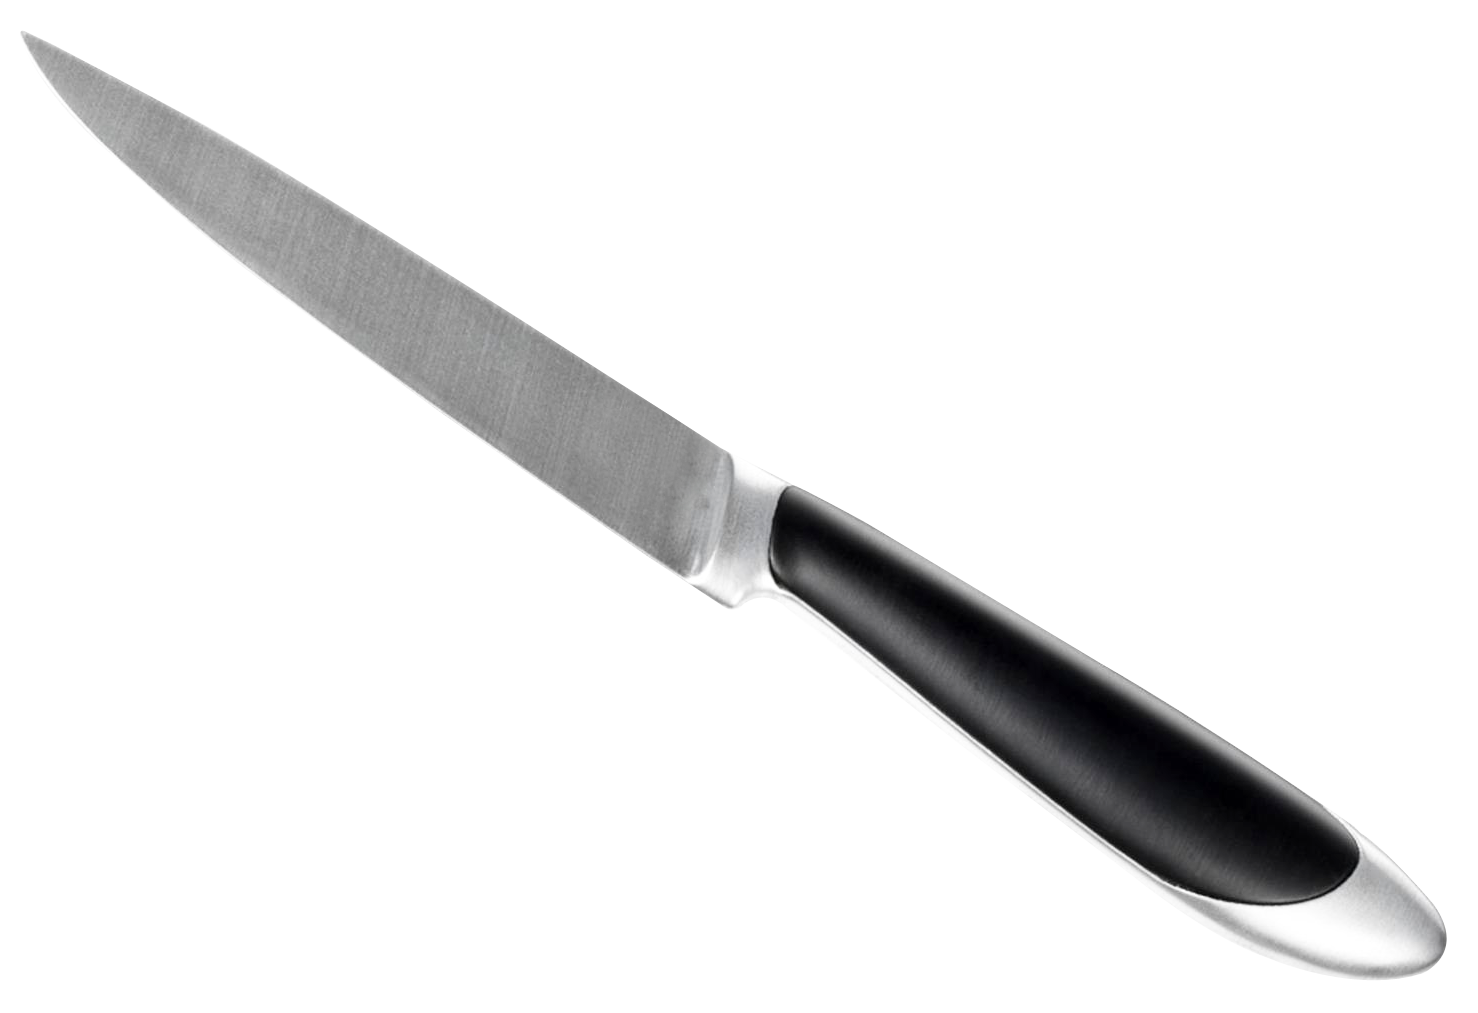 USMC knife PNG image